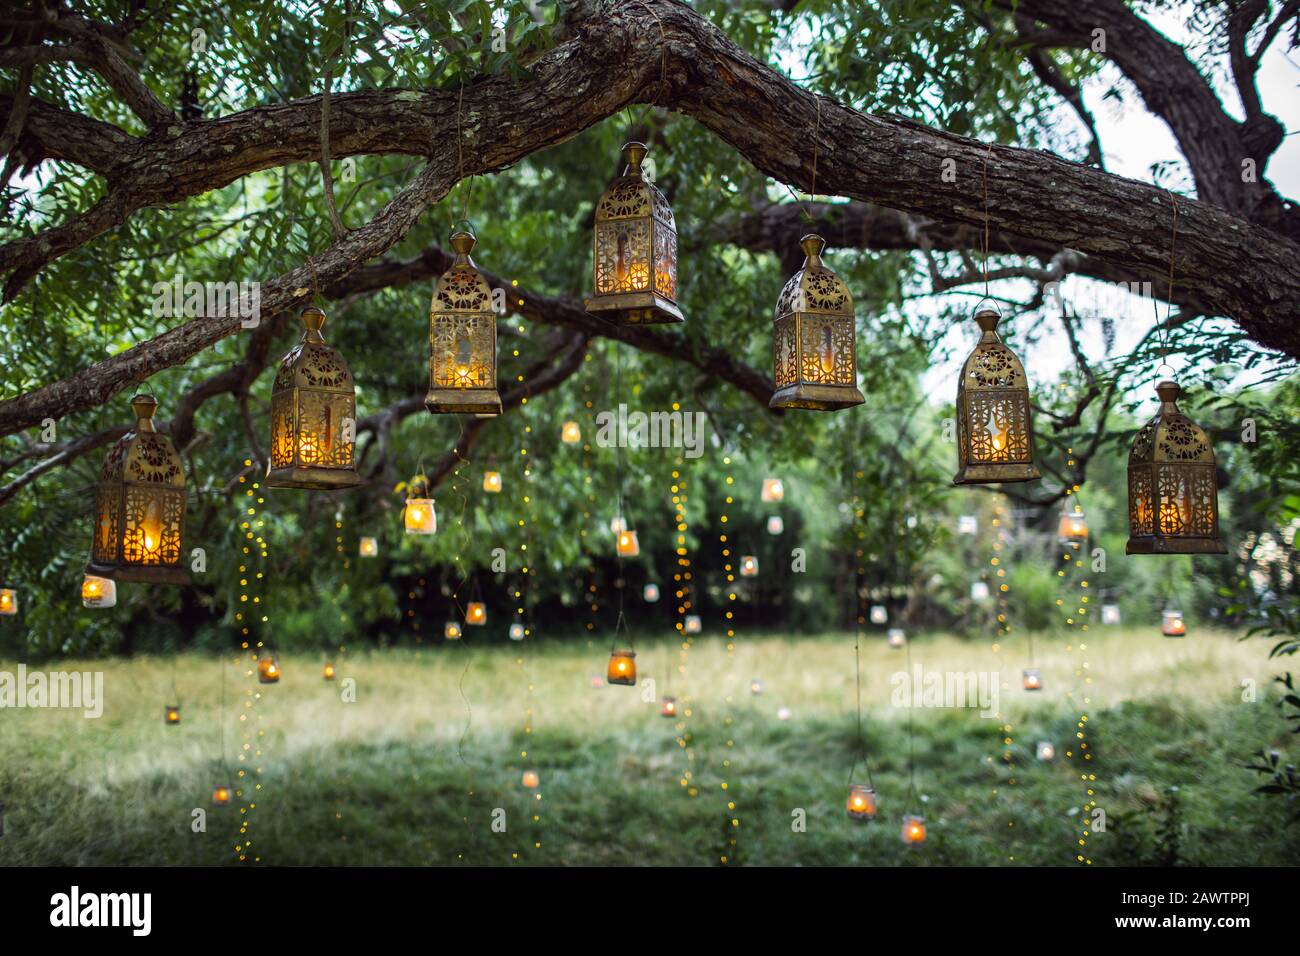 Cerimonia nuziale serale con molte lanterne vintage, lampade, candele. Decorazione insolita per cerimonie all'aperto. Splendido concetto di festa in giardino. Foto Stock